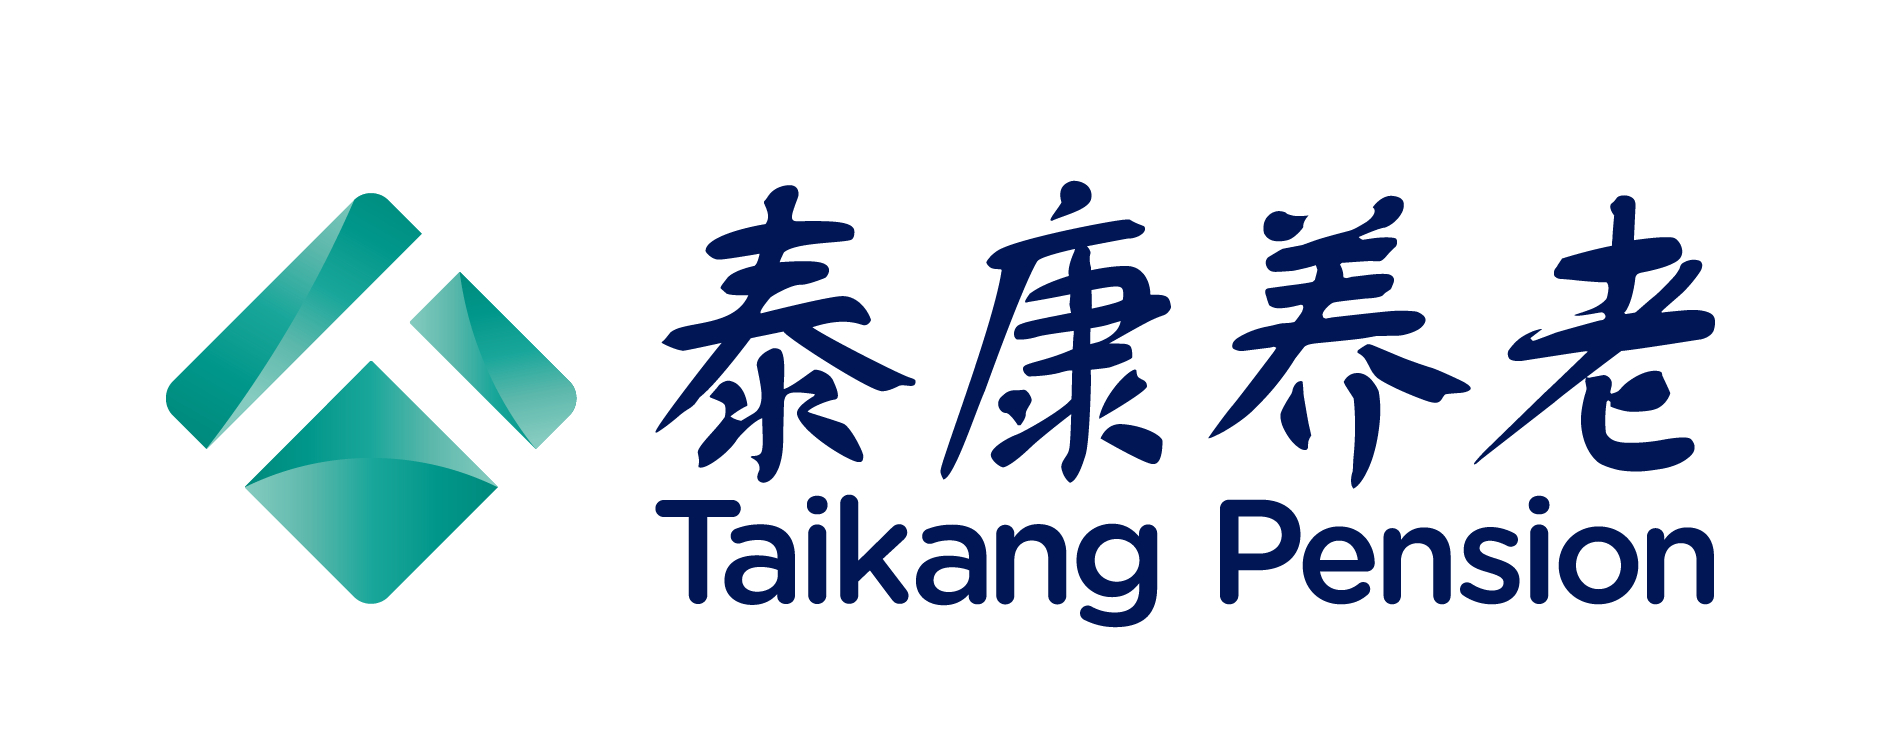 泰康集团logo图片